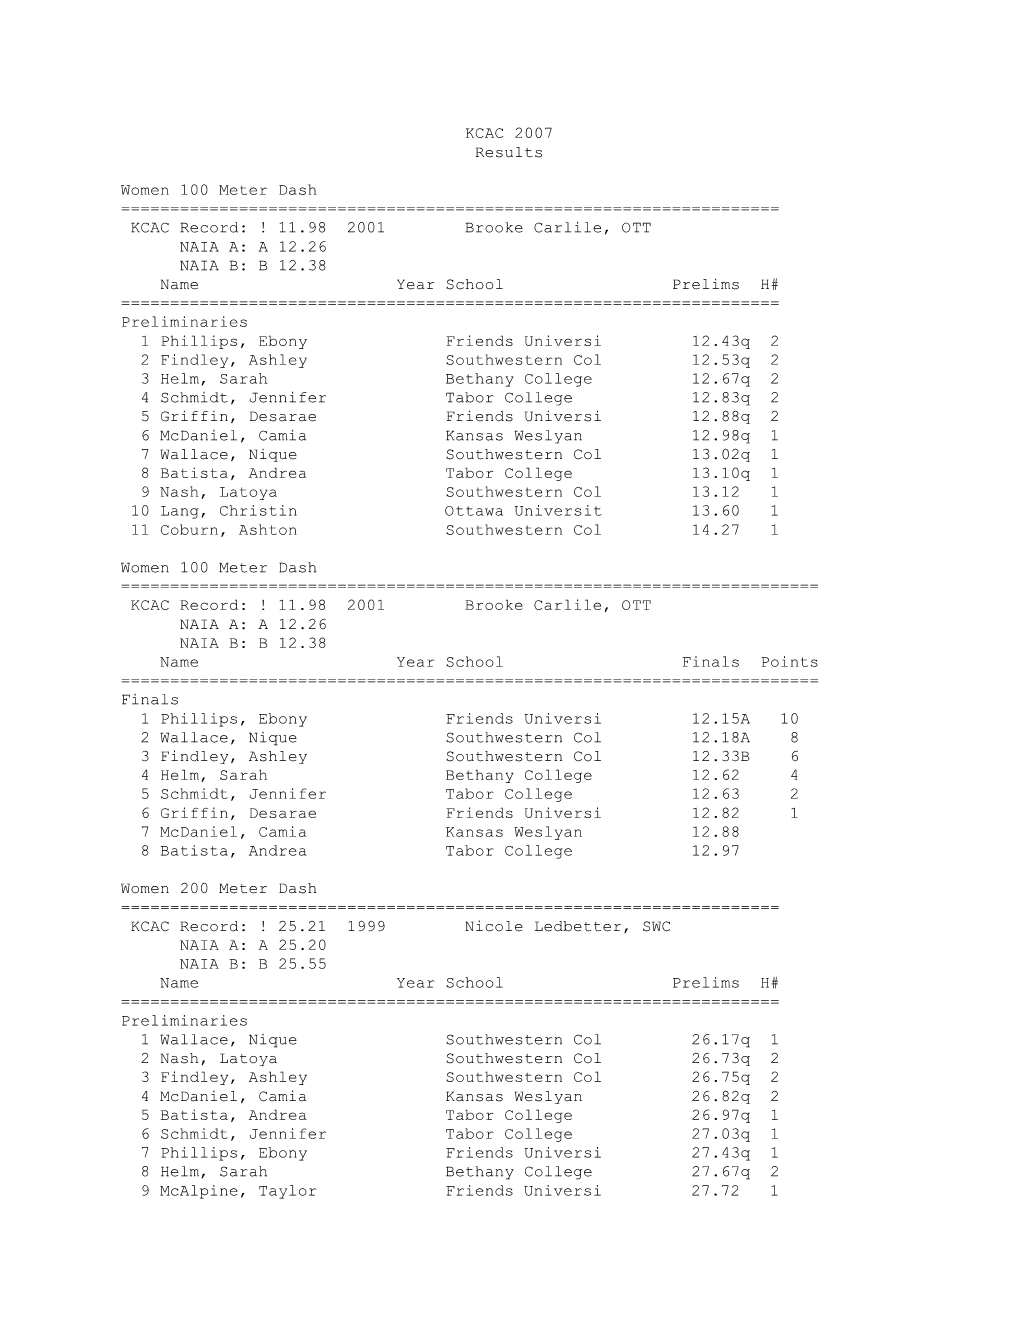 KCAC 2007 Results Women 100 Meter Dash